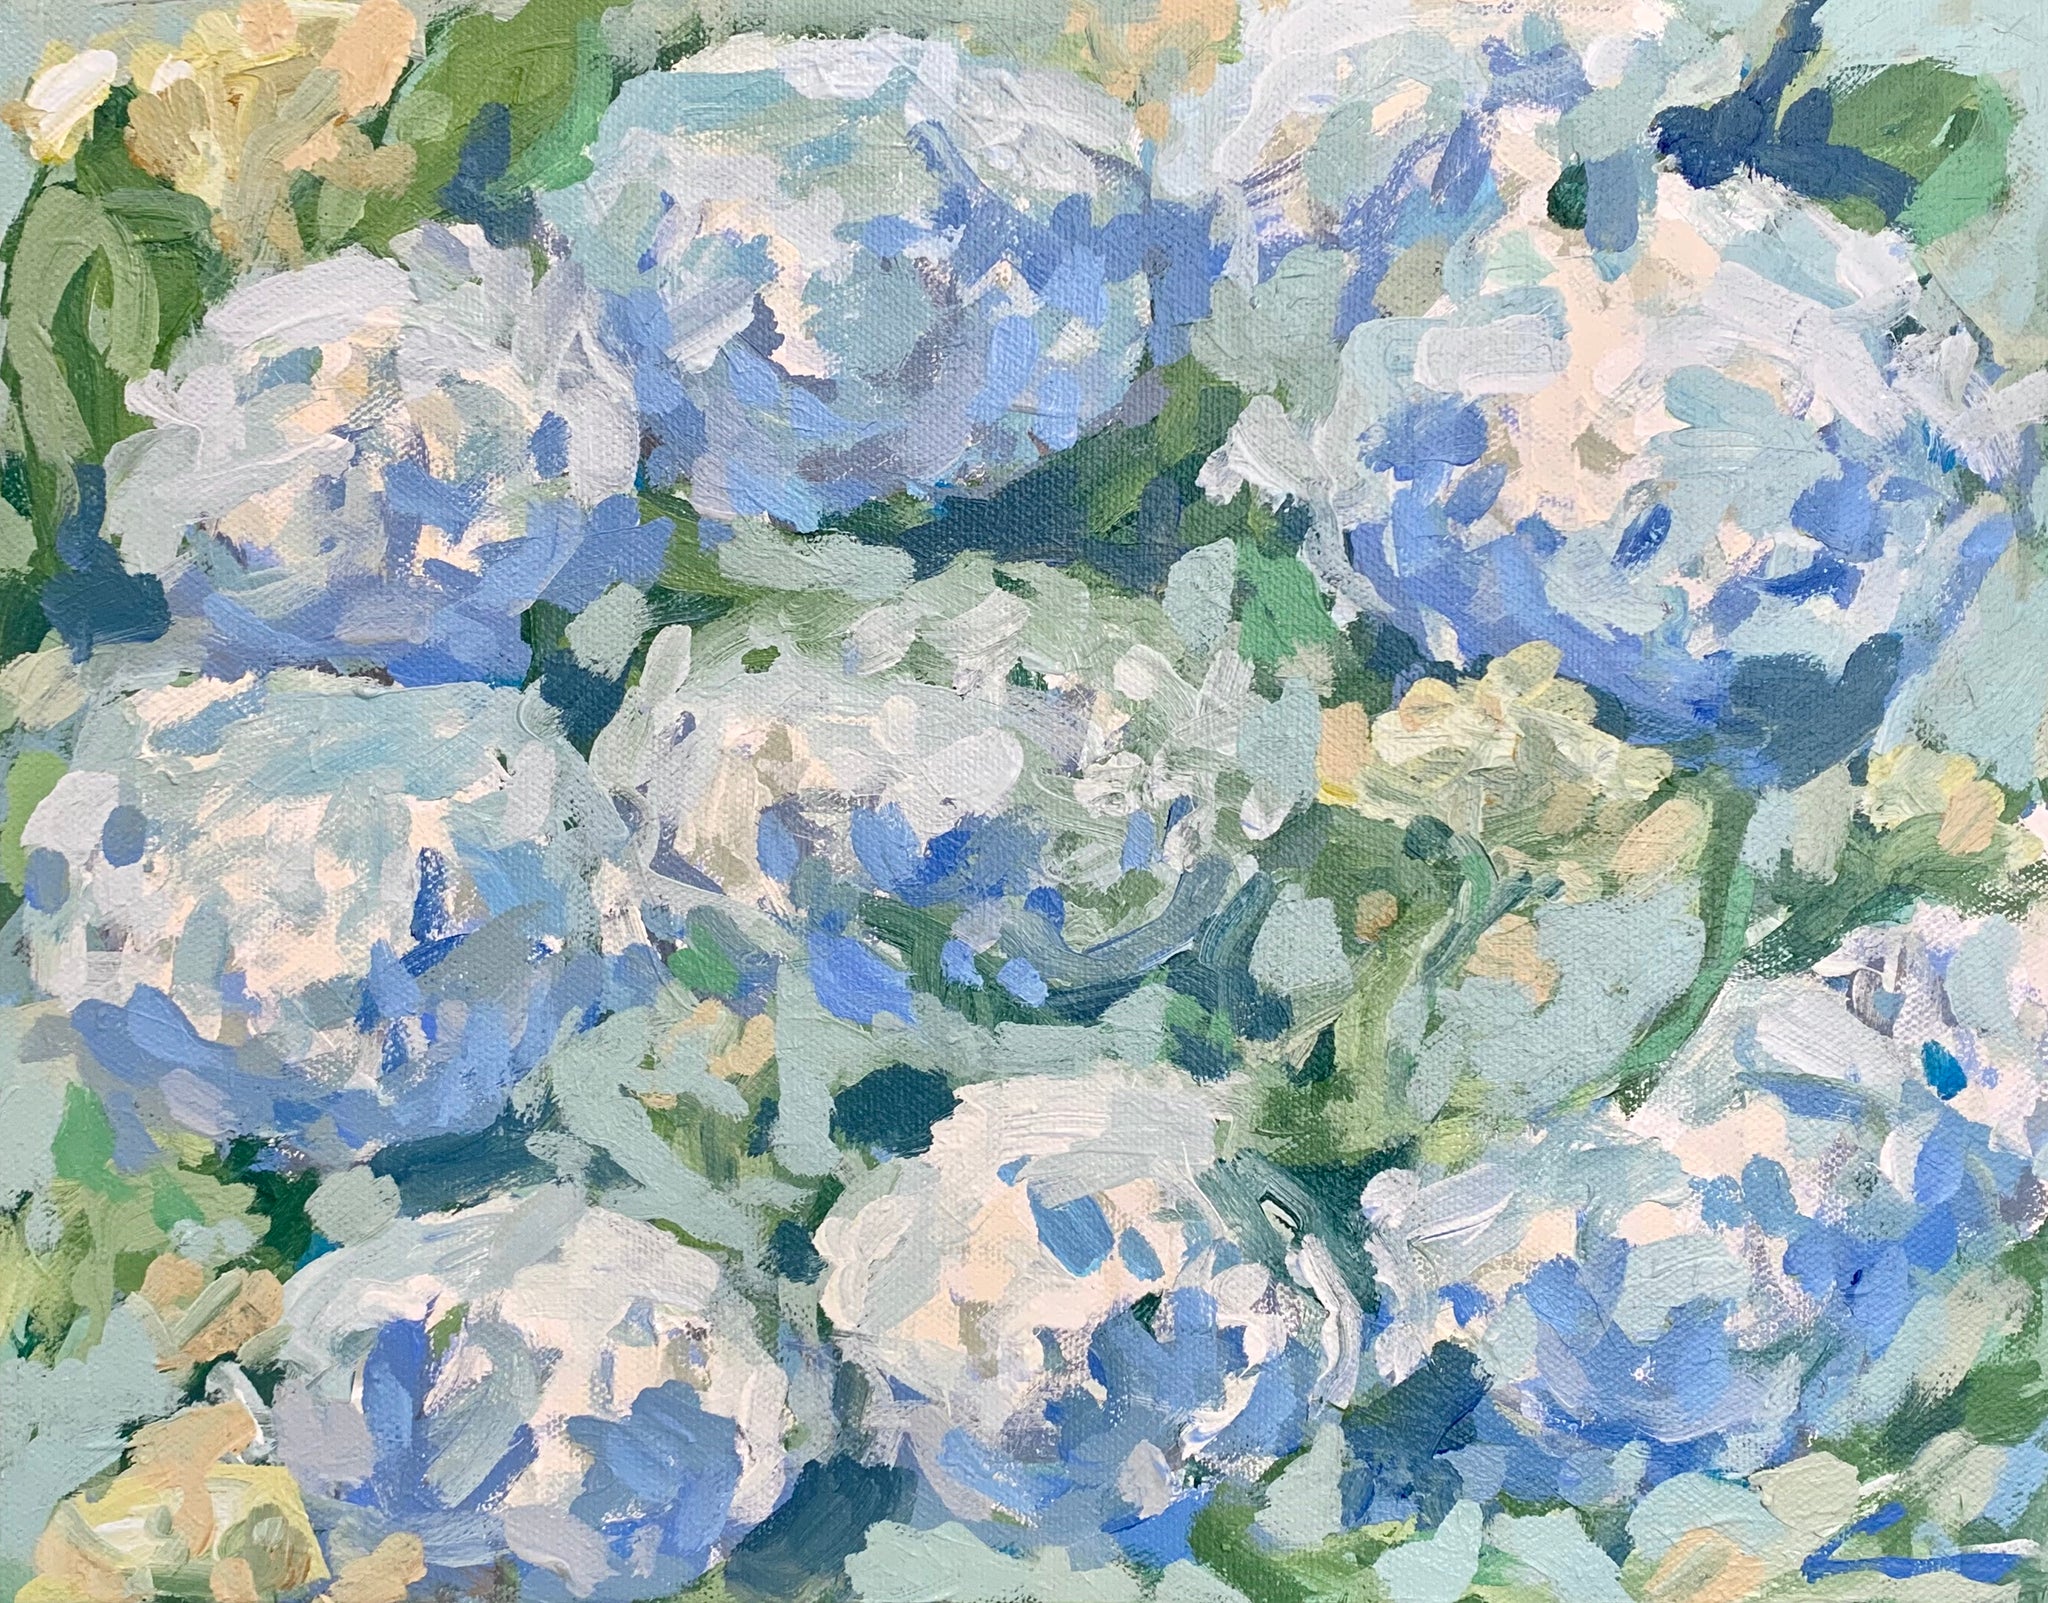 Hydrangeas in Bloom- 14x11